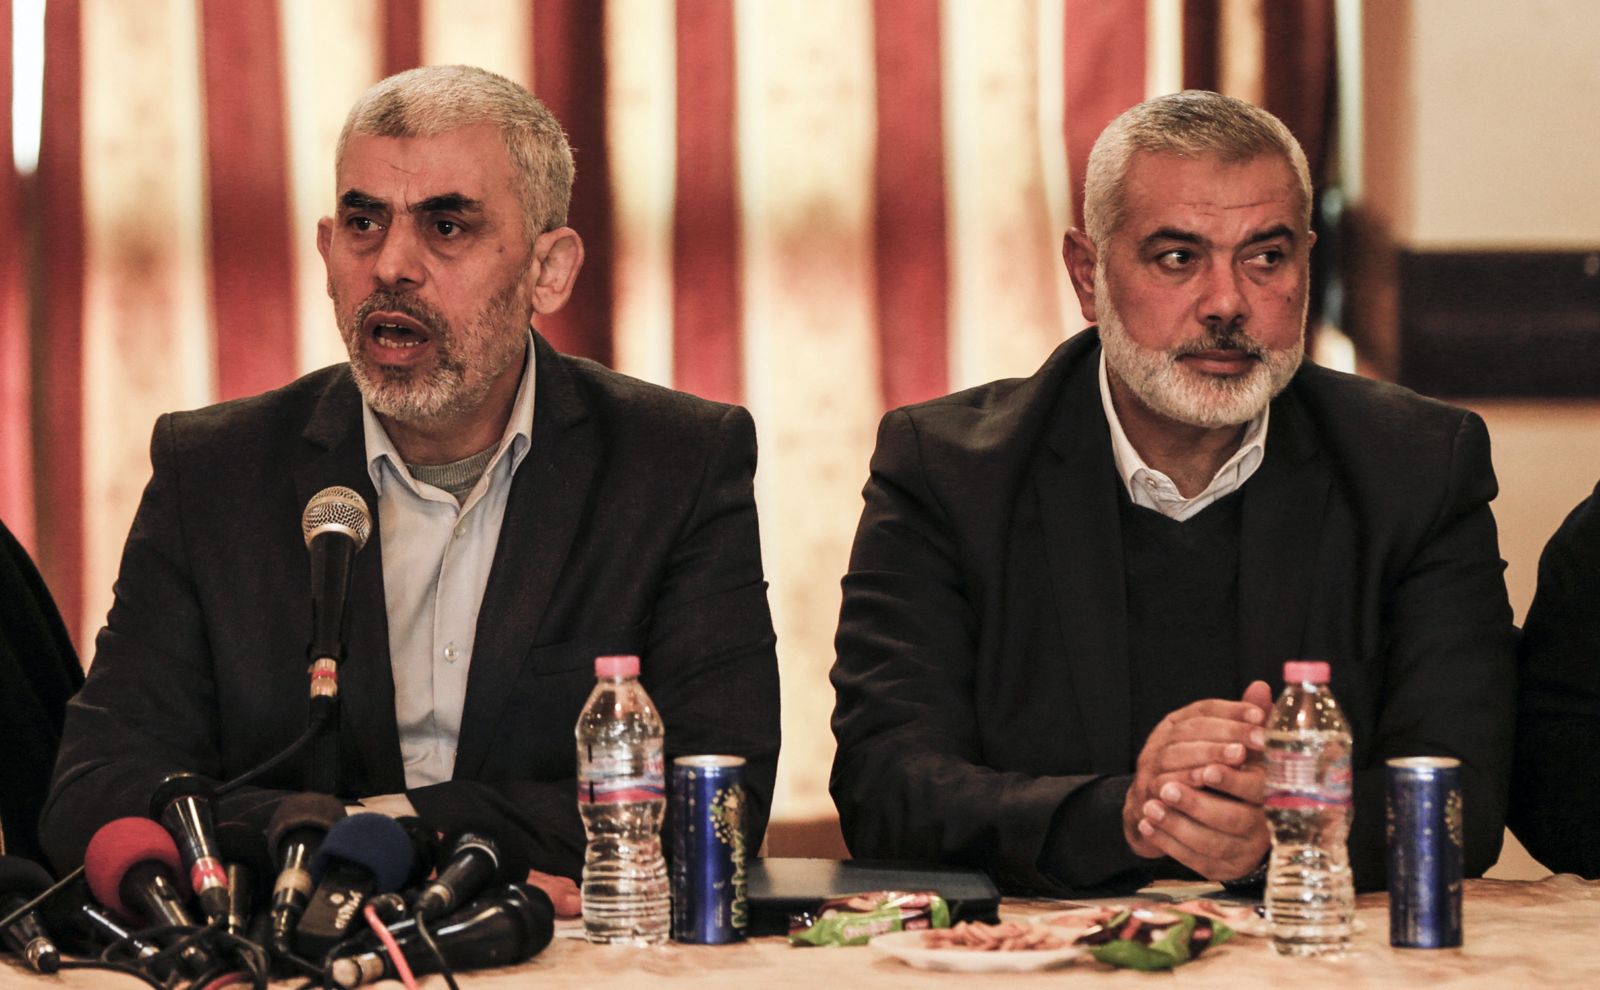 إسماعيل هنية، رئيس المكتب السياسي لحركة حماس (يمين)، ويحيى السنوار، رئيس المكتب السياسي للحركة في قطاع غزة (يسار)، 26 ديسمبر 2017